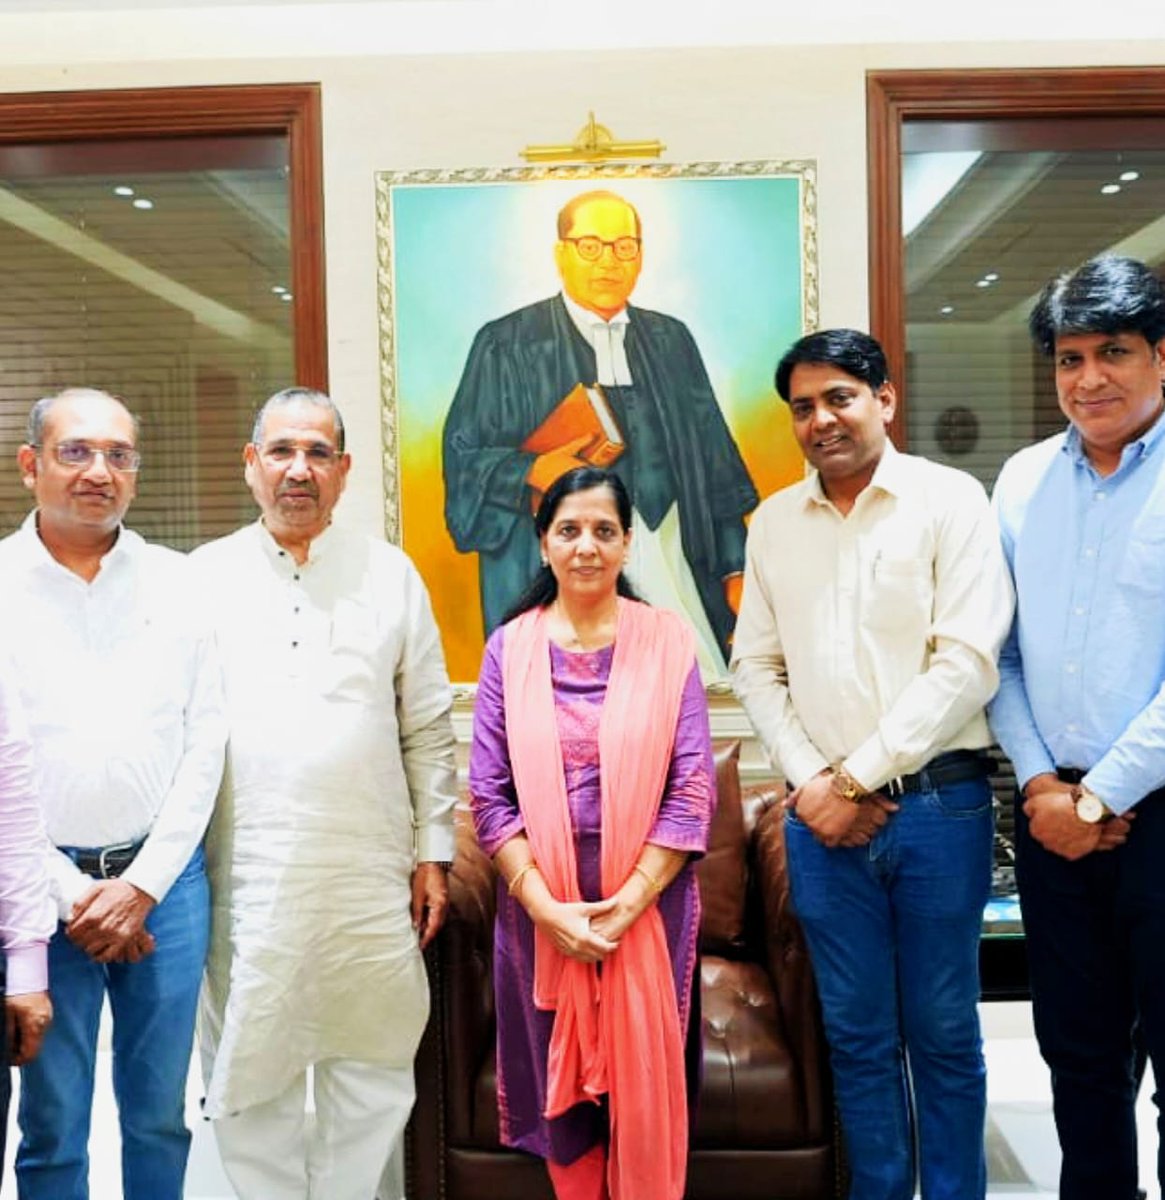 टीम सीटीआई के साथ दिल्ली के लोकप्रिय मुख्यमंत्री श्री @arvindkejriwal जी की धर्मपत्नी श्रीमती सुनीता केजरीवाल जी से मुलाकात कर मुख्यमंत्री जी के स्वास्थ्य के बारे में जाना। इस कठिन समय में दिल्ली का समूचा व्यापारी वर्ग समस्त जनता अपने लोकप्रिय मुख्यमंत्री के साथ खड़ी है। #CTI